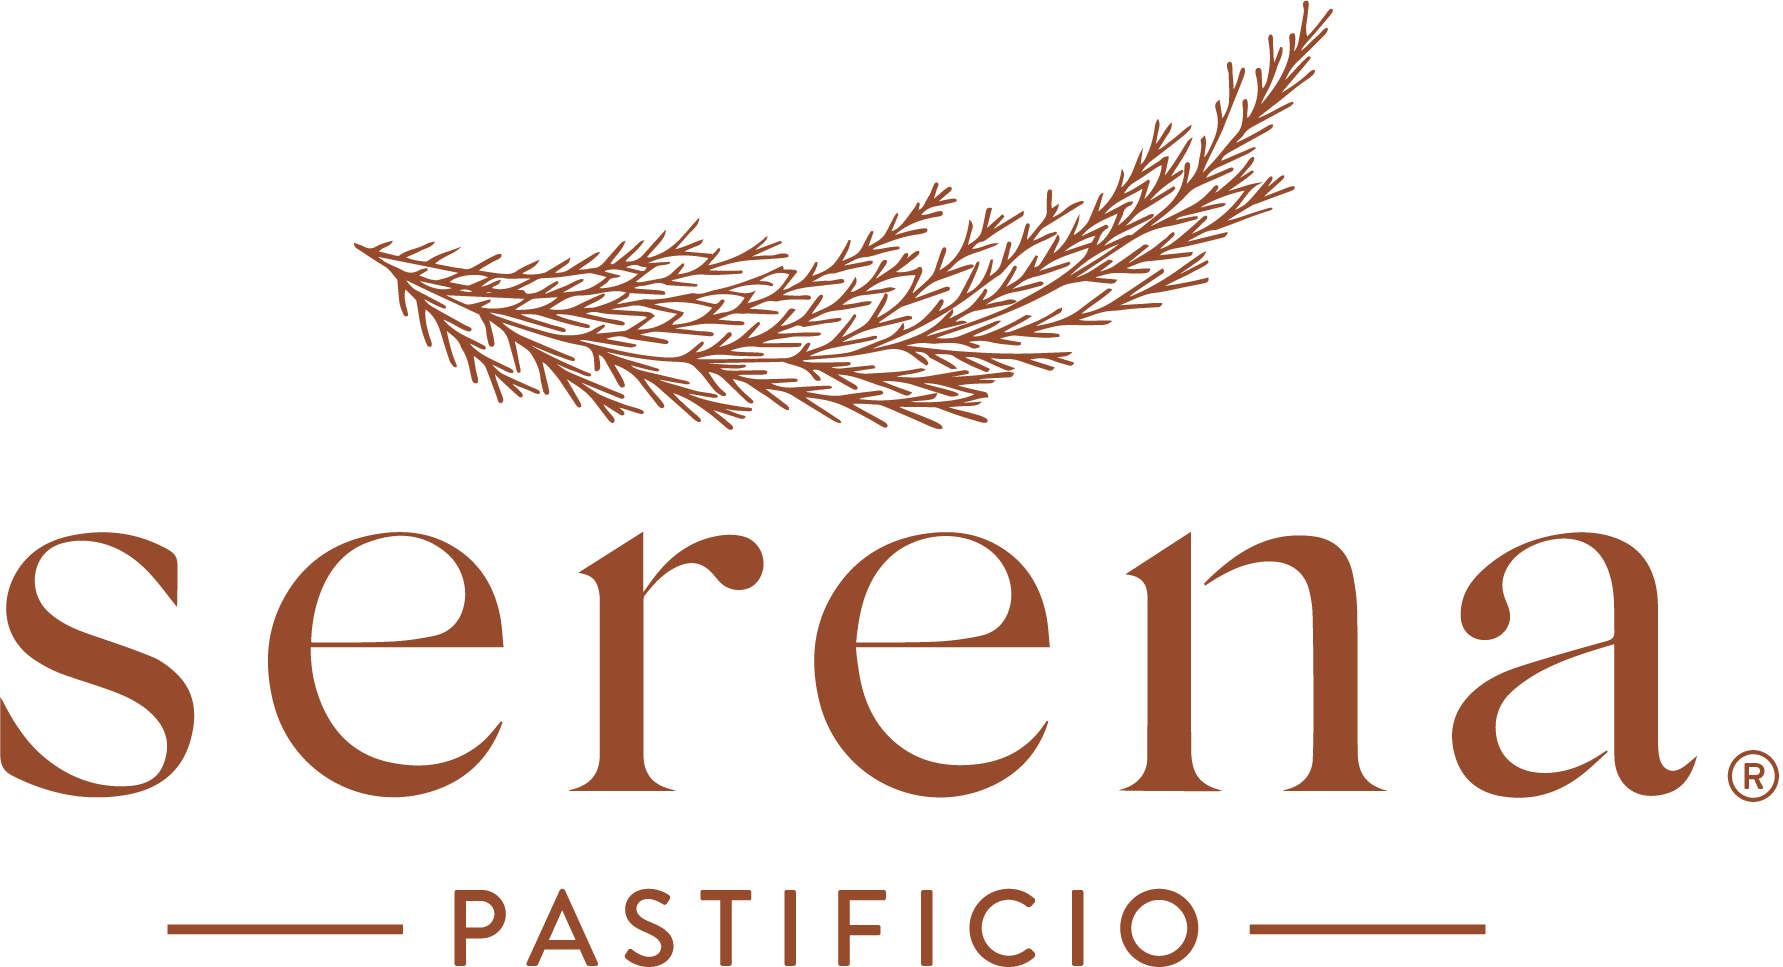 Serena Pastificio Logo